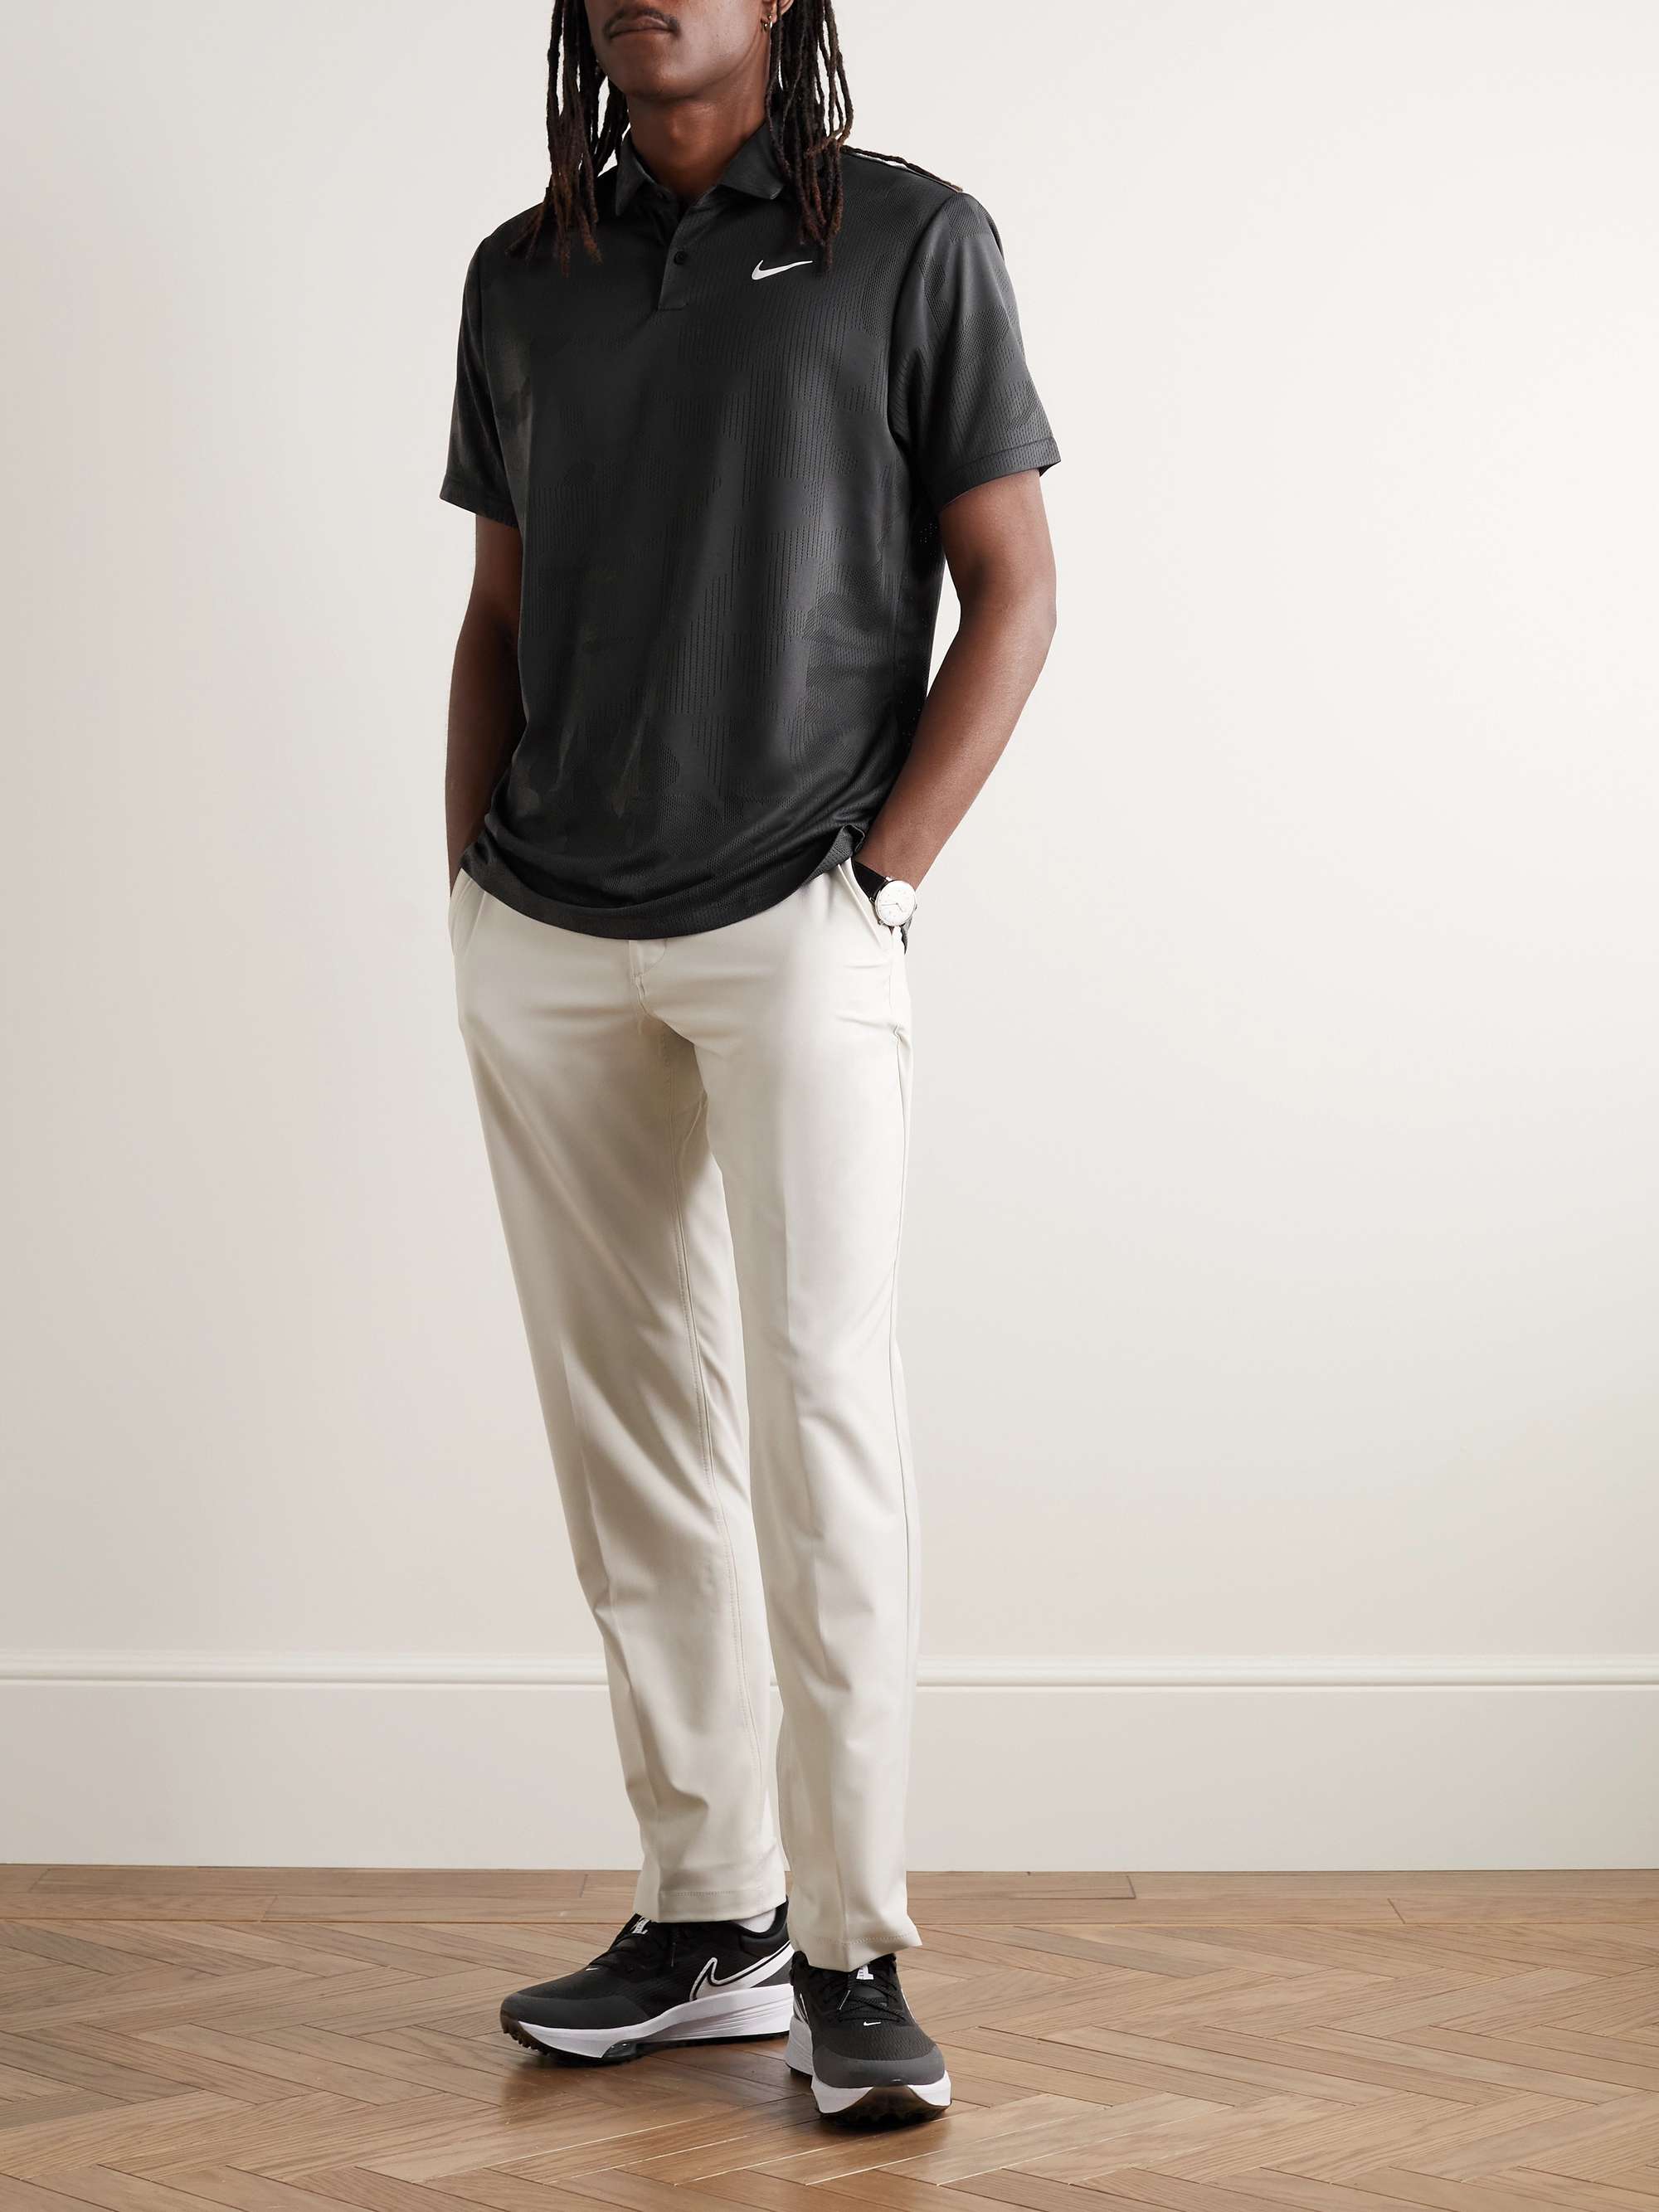 NIKE GOLF Tour Dri-FIT Jacquard Golf Polo Shirt for Men | MR PORTER